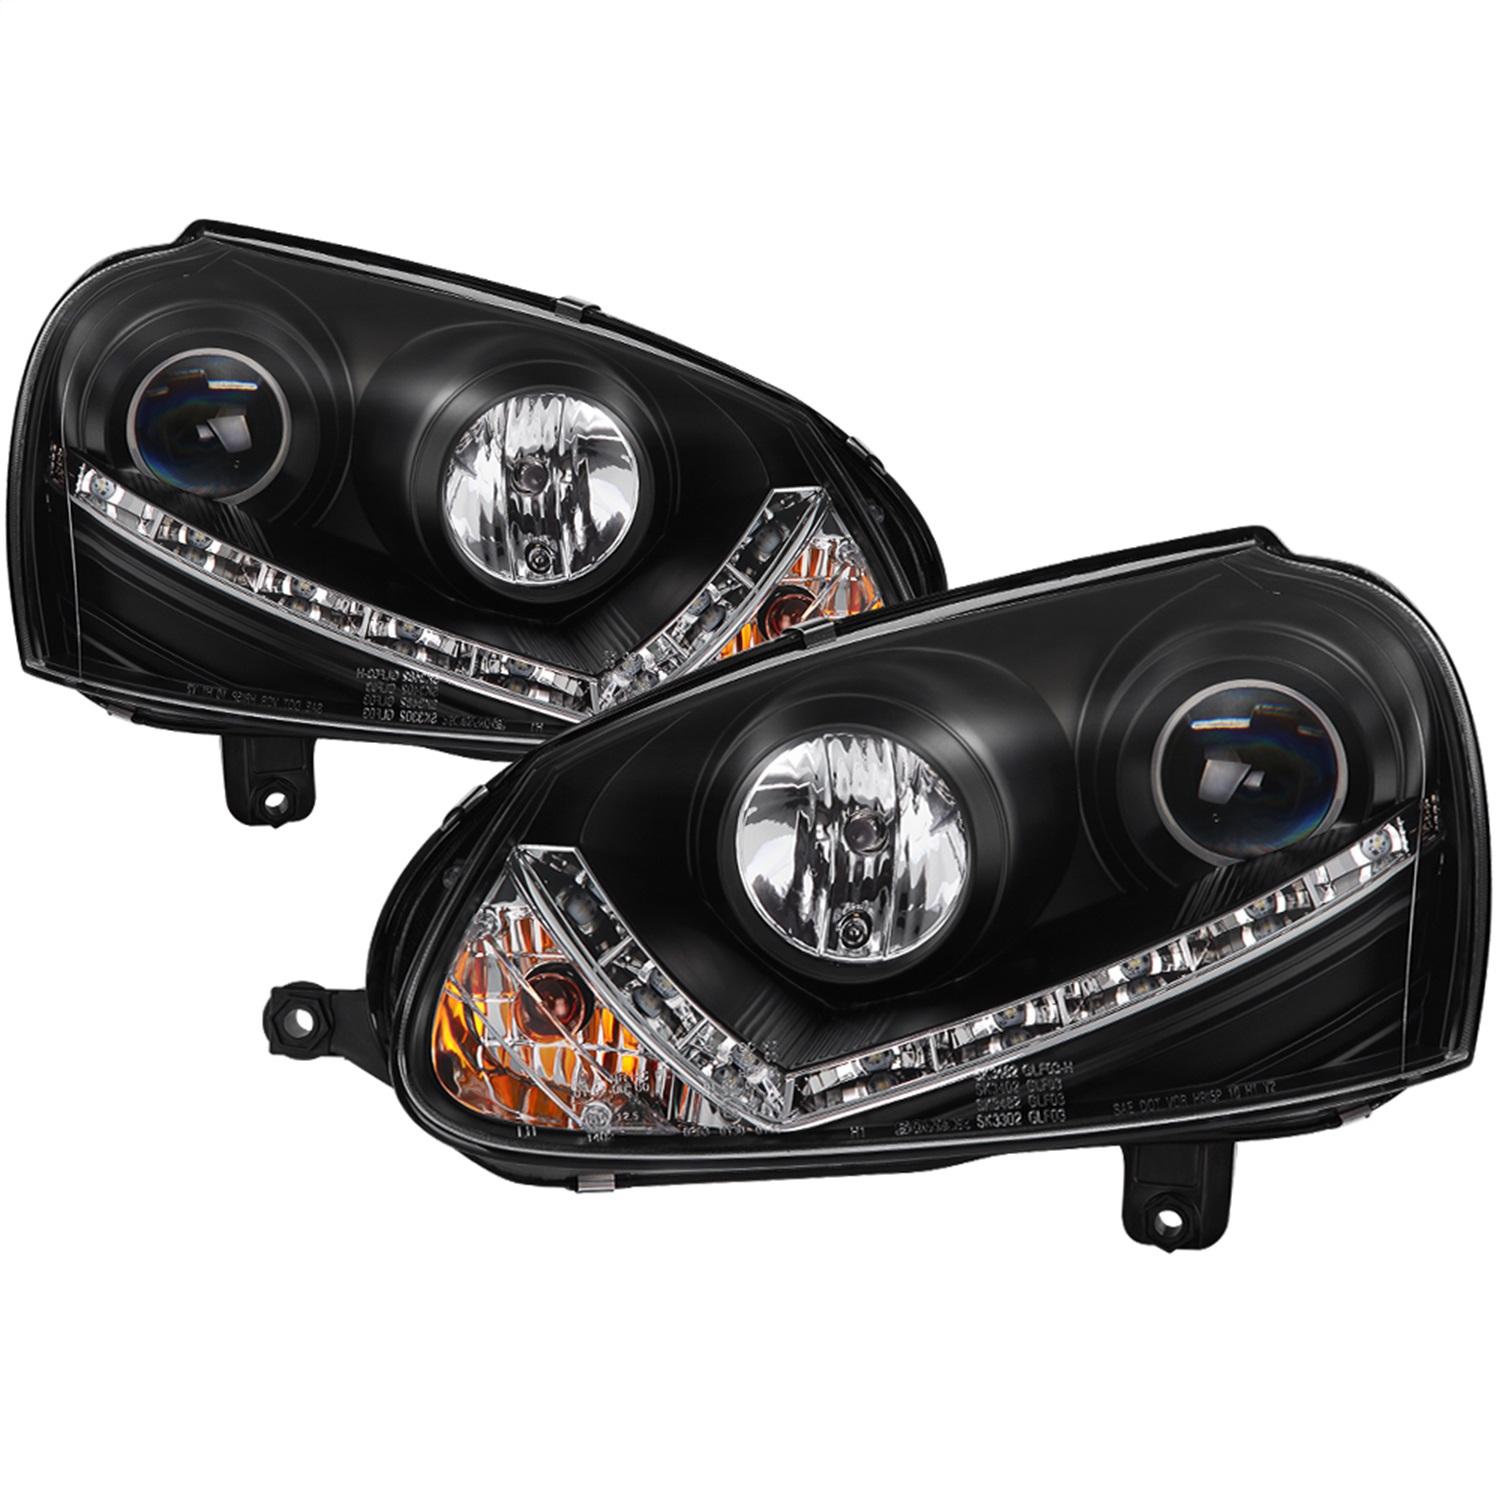 Spyder Auto 5017529 DRL LED Projector Headlights Fits 06-09 GTI Jetta Rabbit